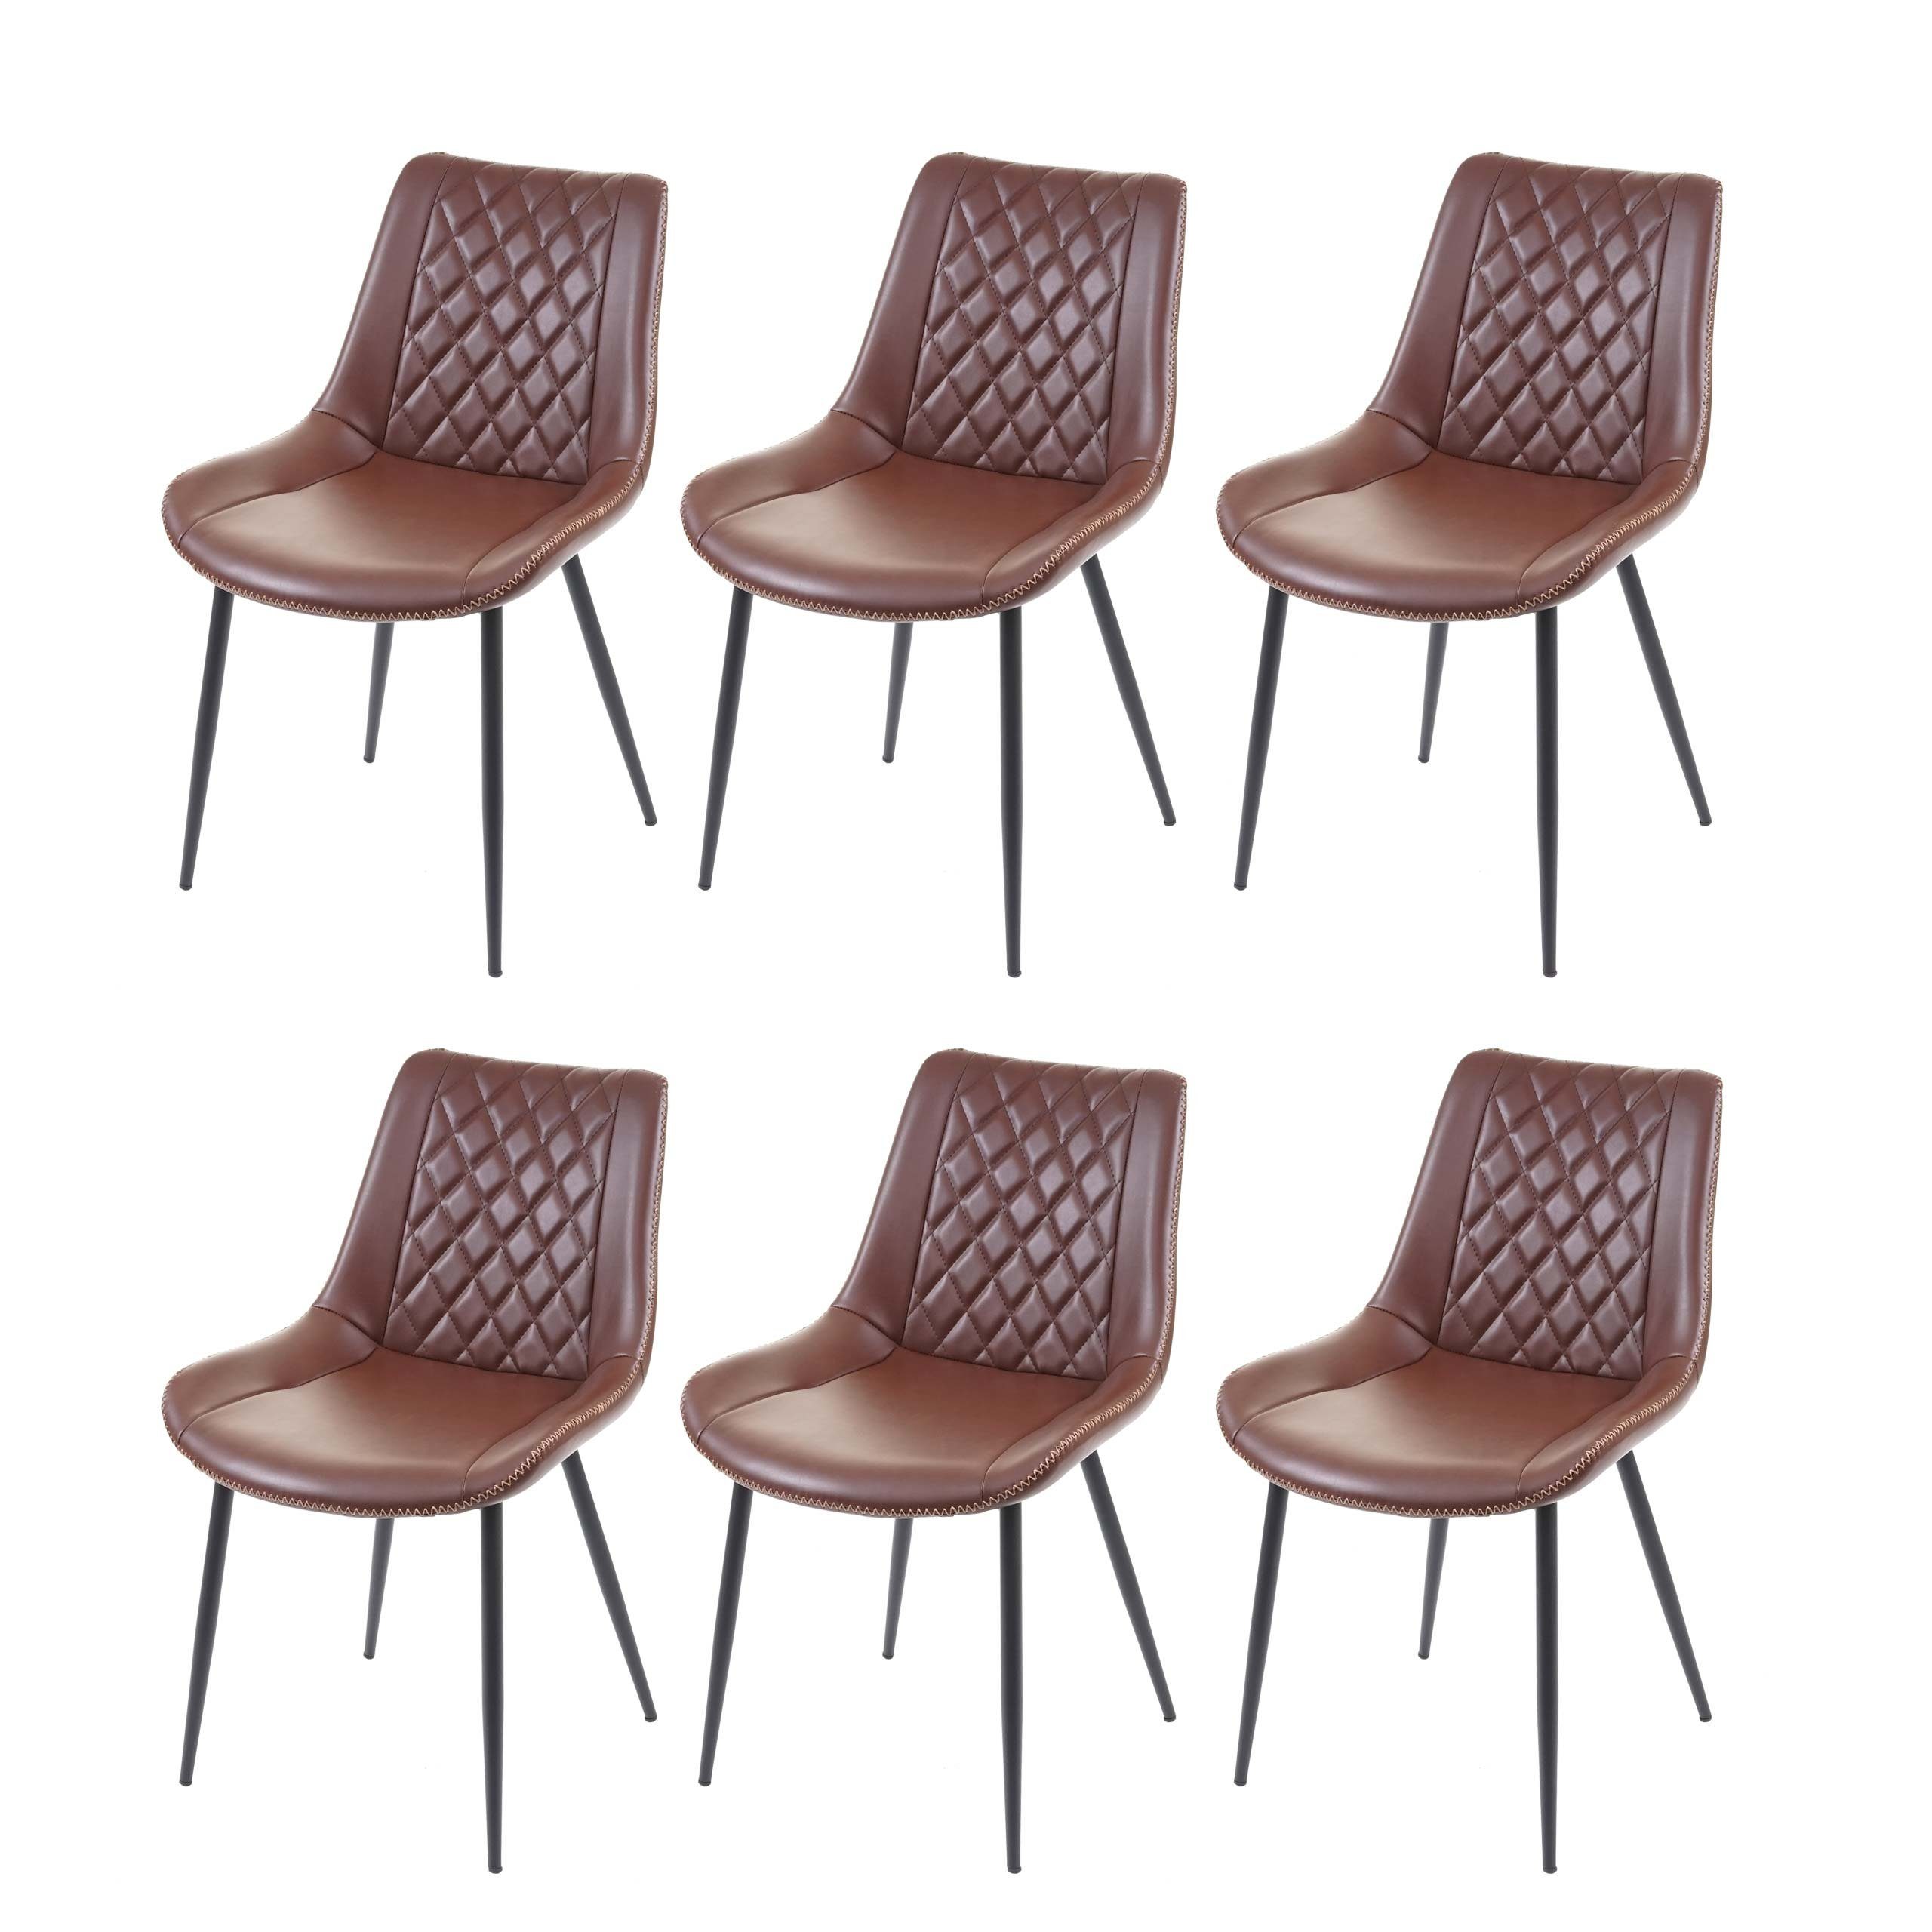 MCW Esszimmerstuhl MCW-E56-6 (Set, 6 St), 6er-Set, Inklusive Fußbodenschoner, dekorative glänzende Ziernaht braun | braun | Stühle